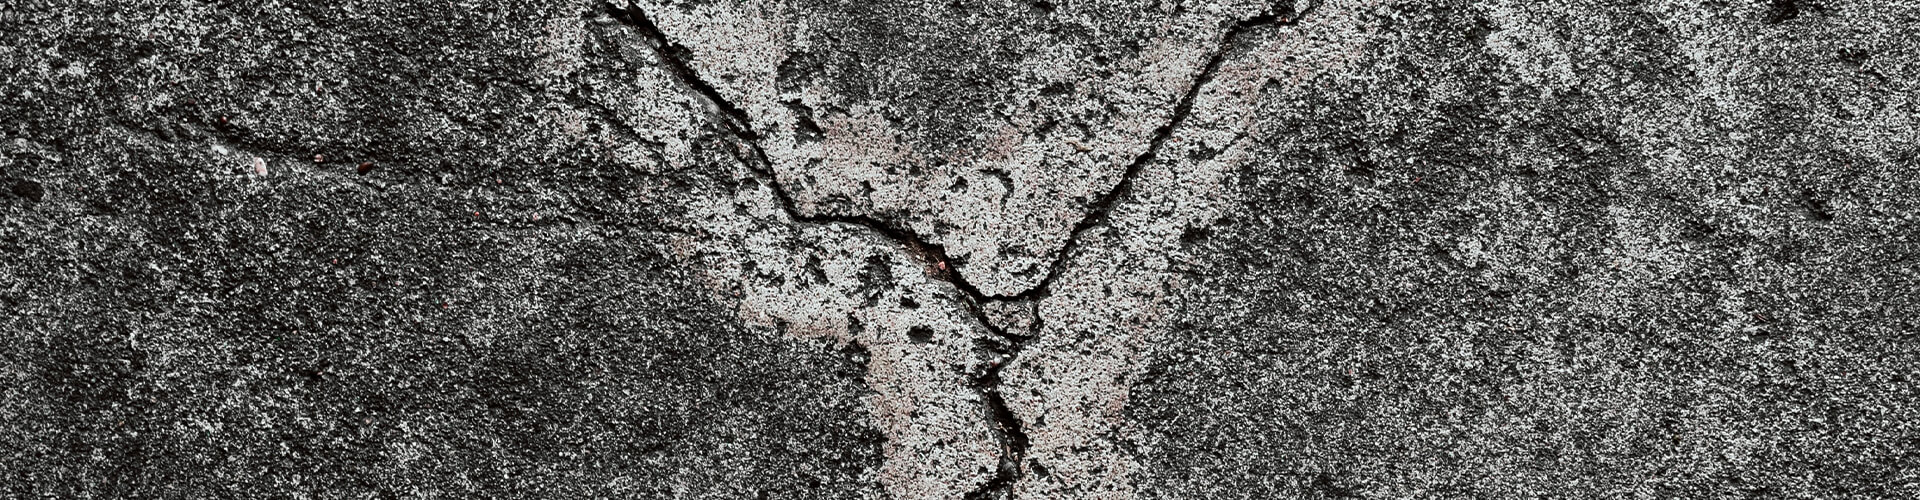 Cracked concrete.